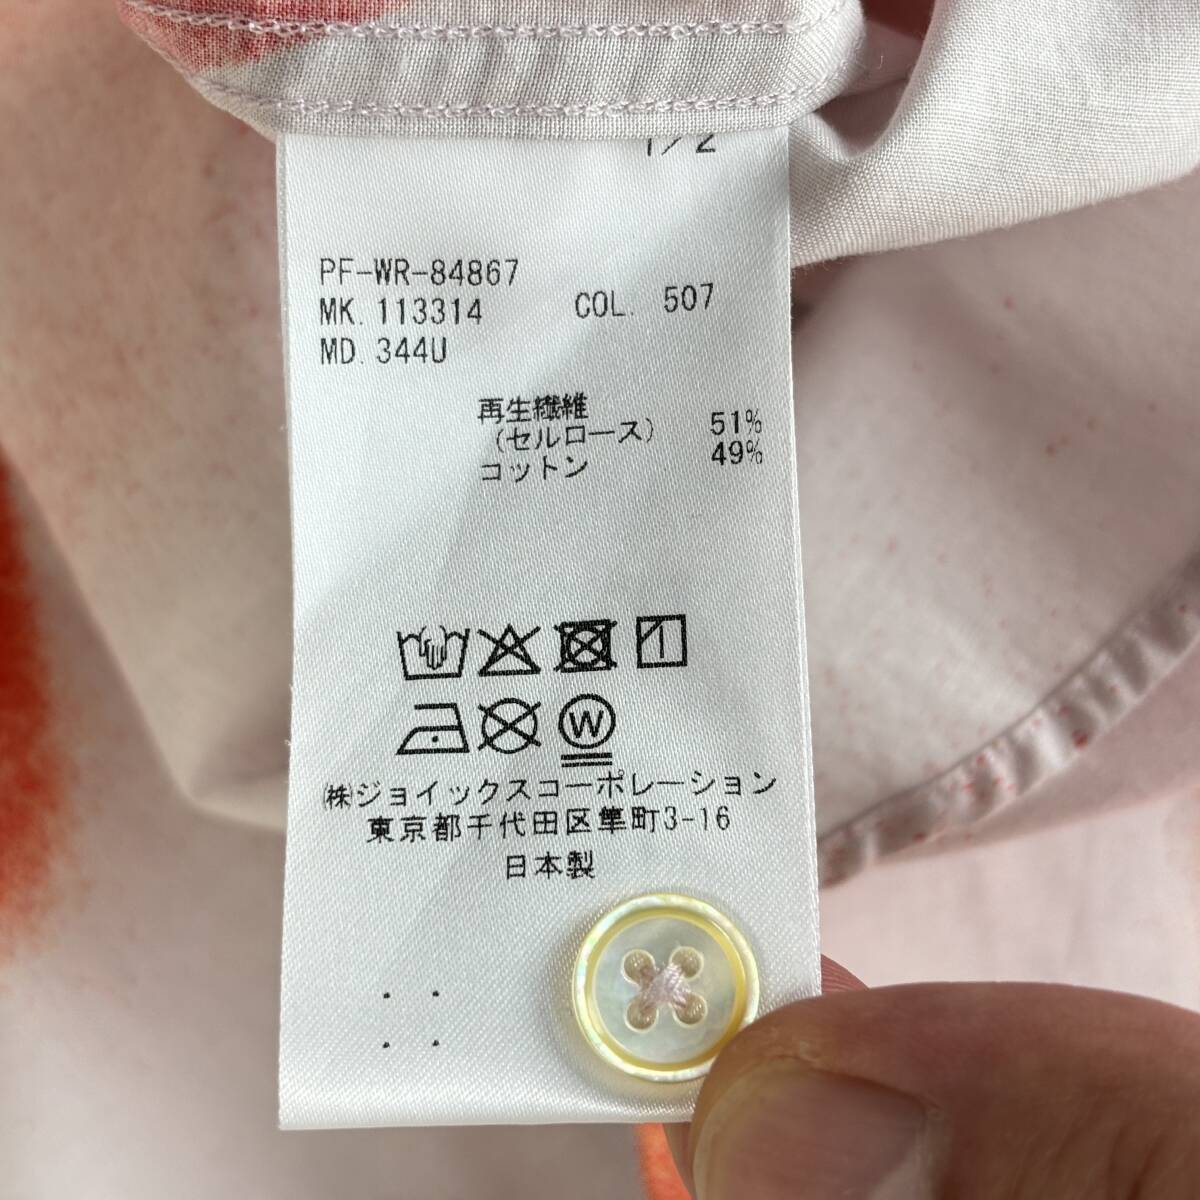 #1 иен ~ < прекрасный товар!!>#Paul Smith Paul Smith спрей рубашка длинный рукав обычно используя модный соединять ... orange весна лето осень L размер 